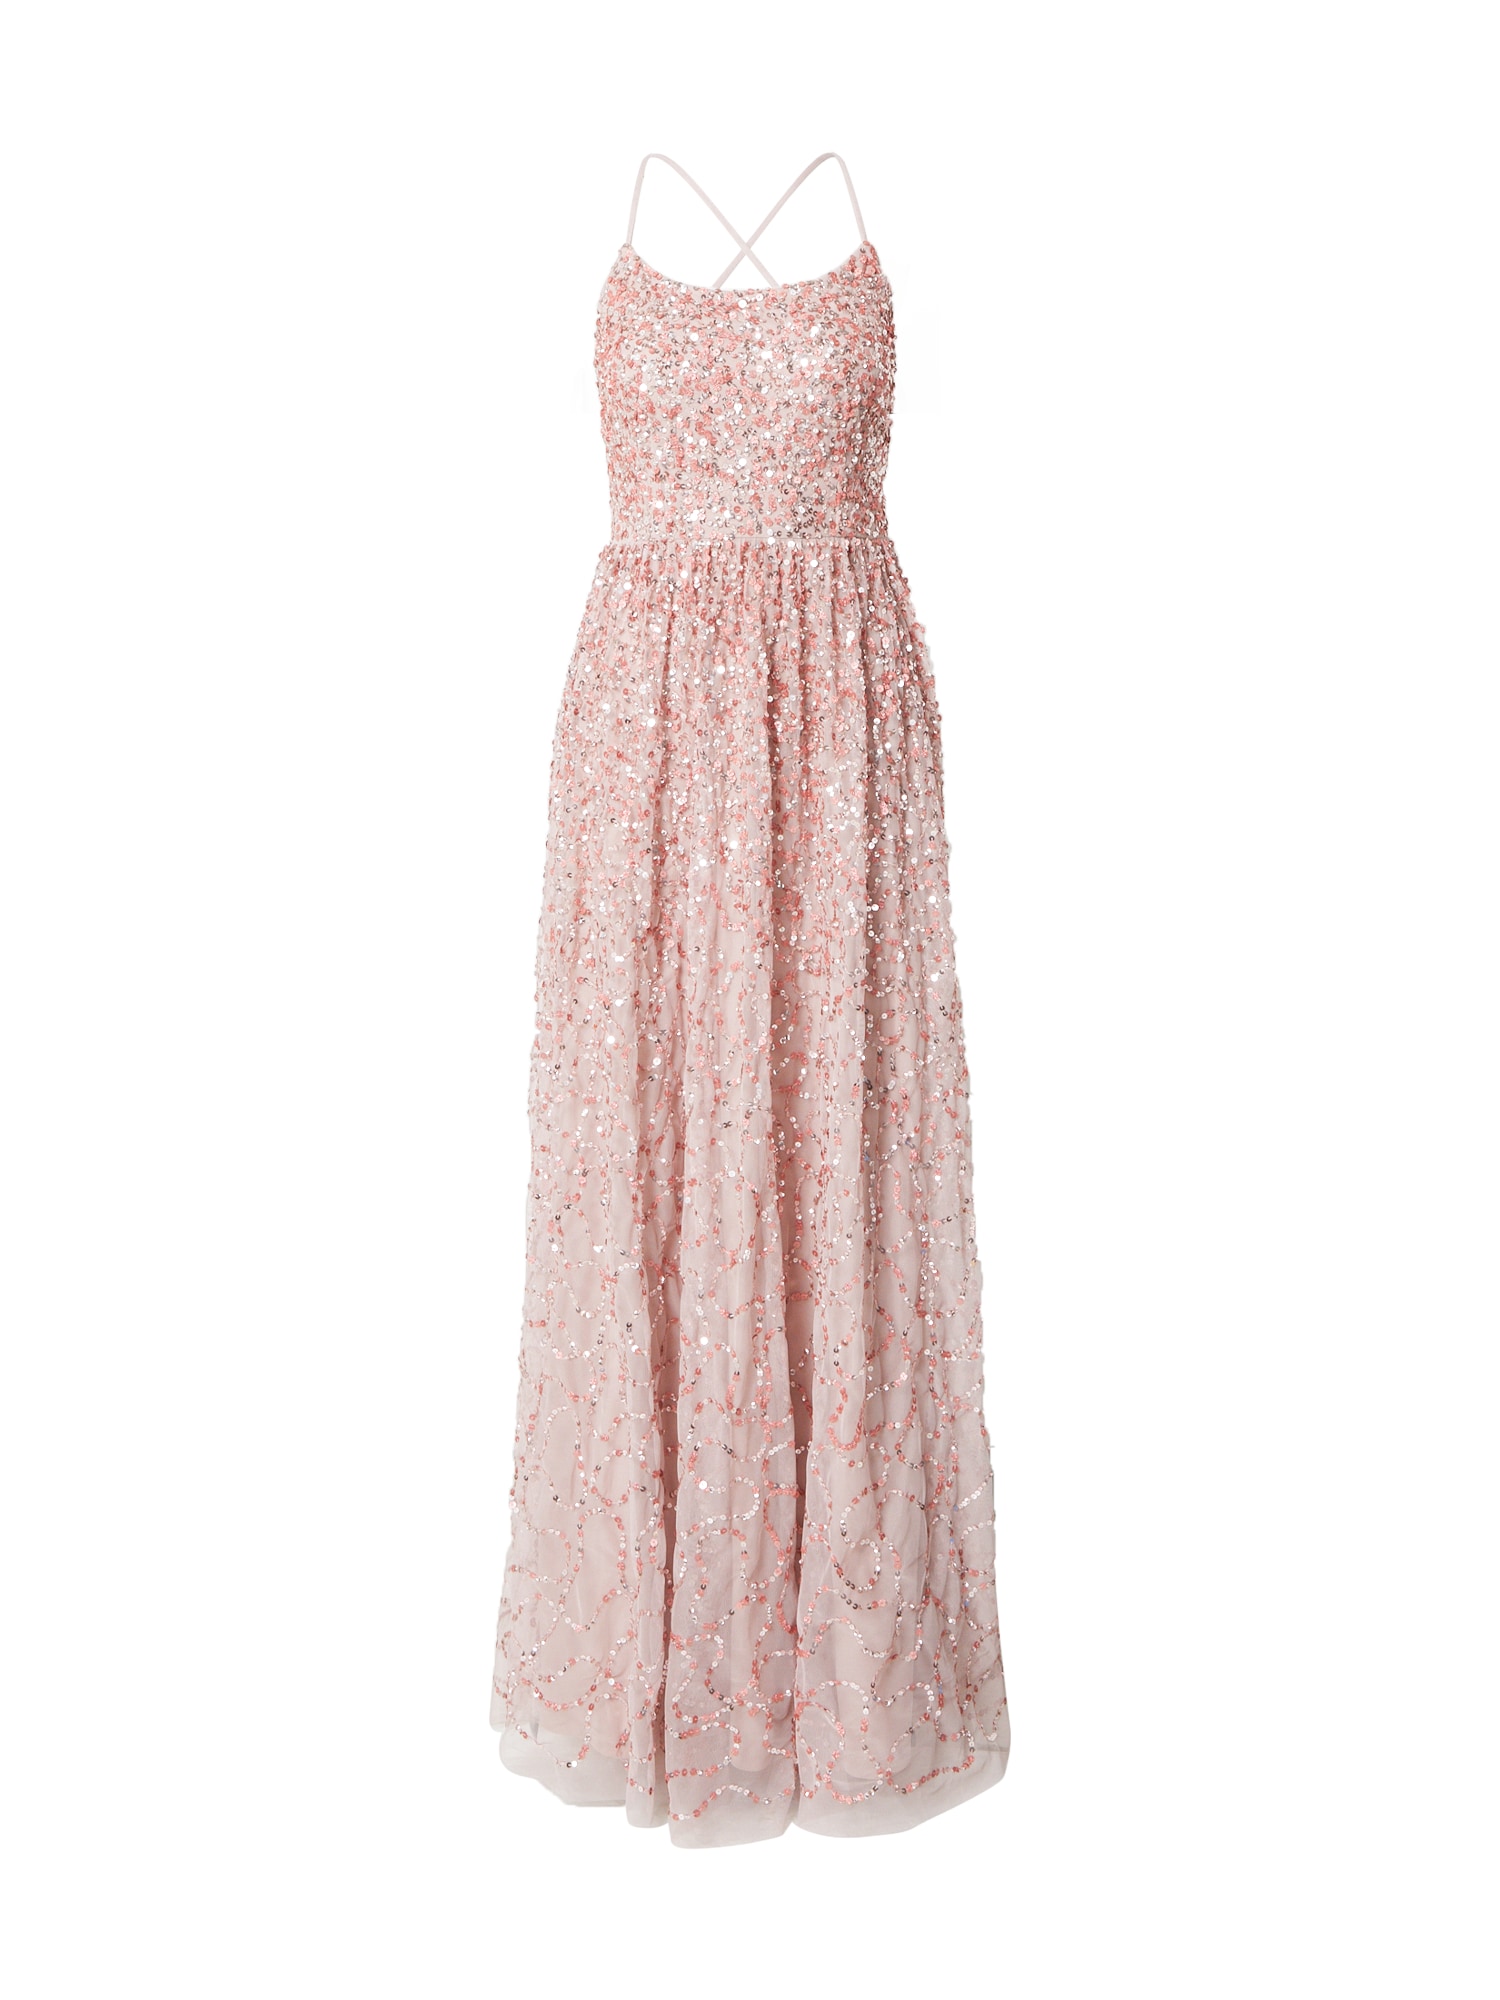 Maya Deluxe Vakarinė suknelė ryškiai rožinė spalva / rožinė / sidabrinė